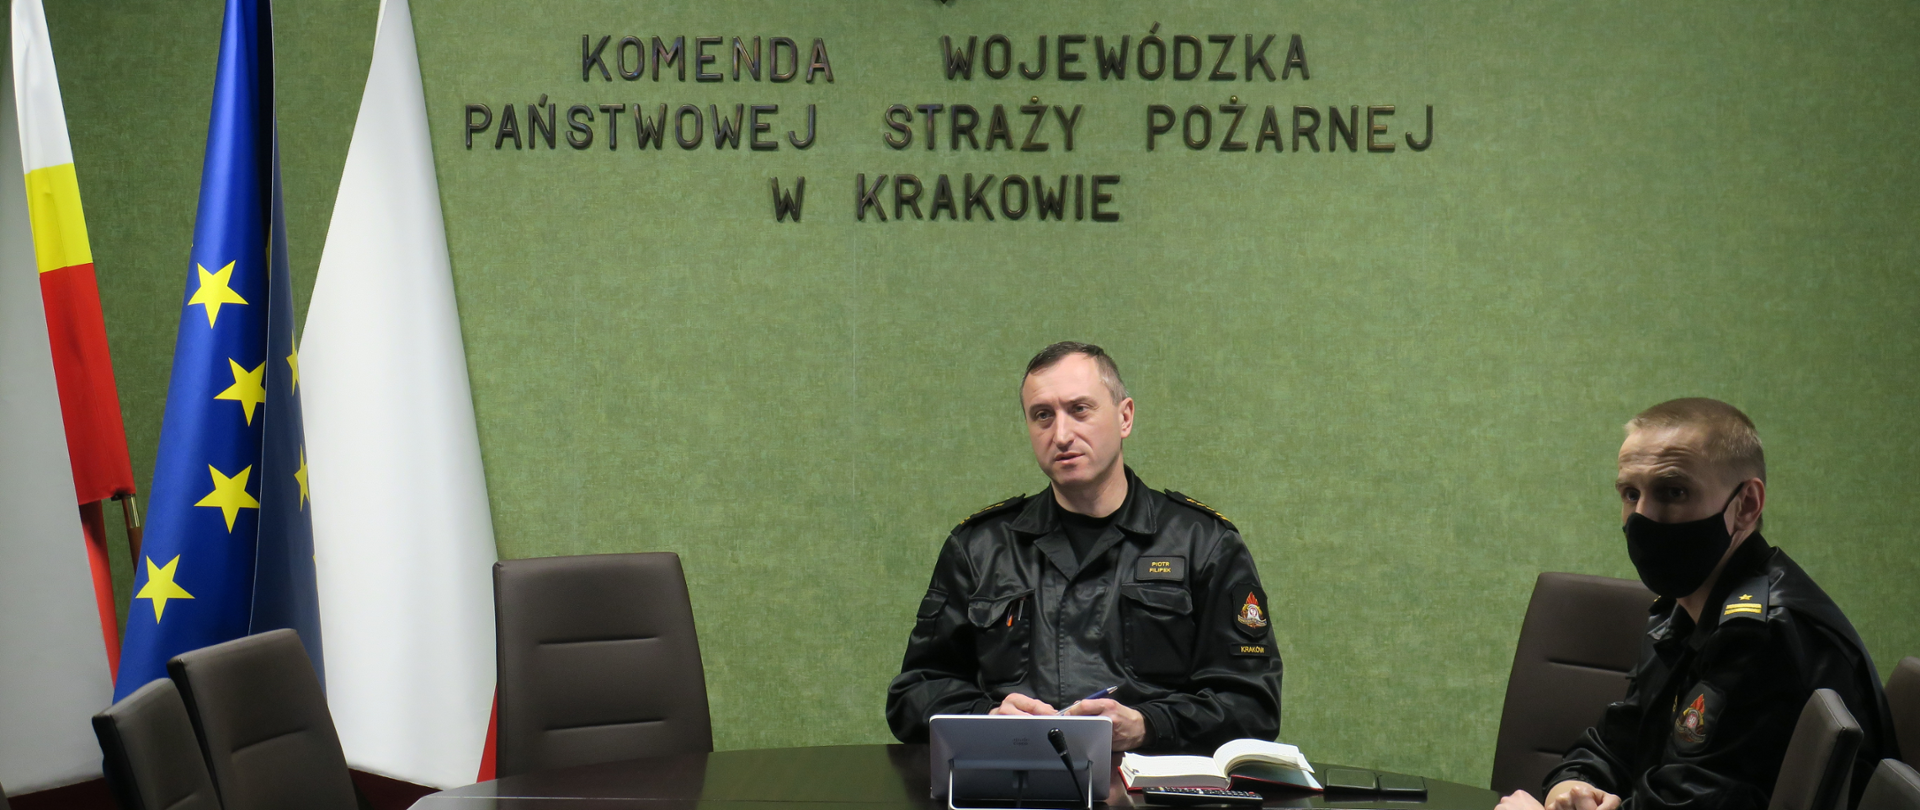 Małopolski Komendant Wojewódzki PSP wraz z Zastępcą siedzą przy stole na sali konferencyjnej. Przed nimi leżą notatki. Ubrani są w mundury dowódczo- sztabowe.